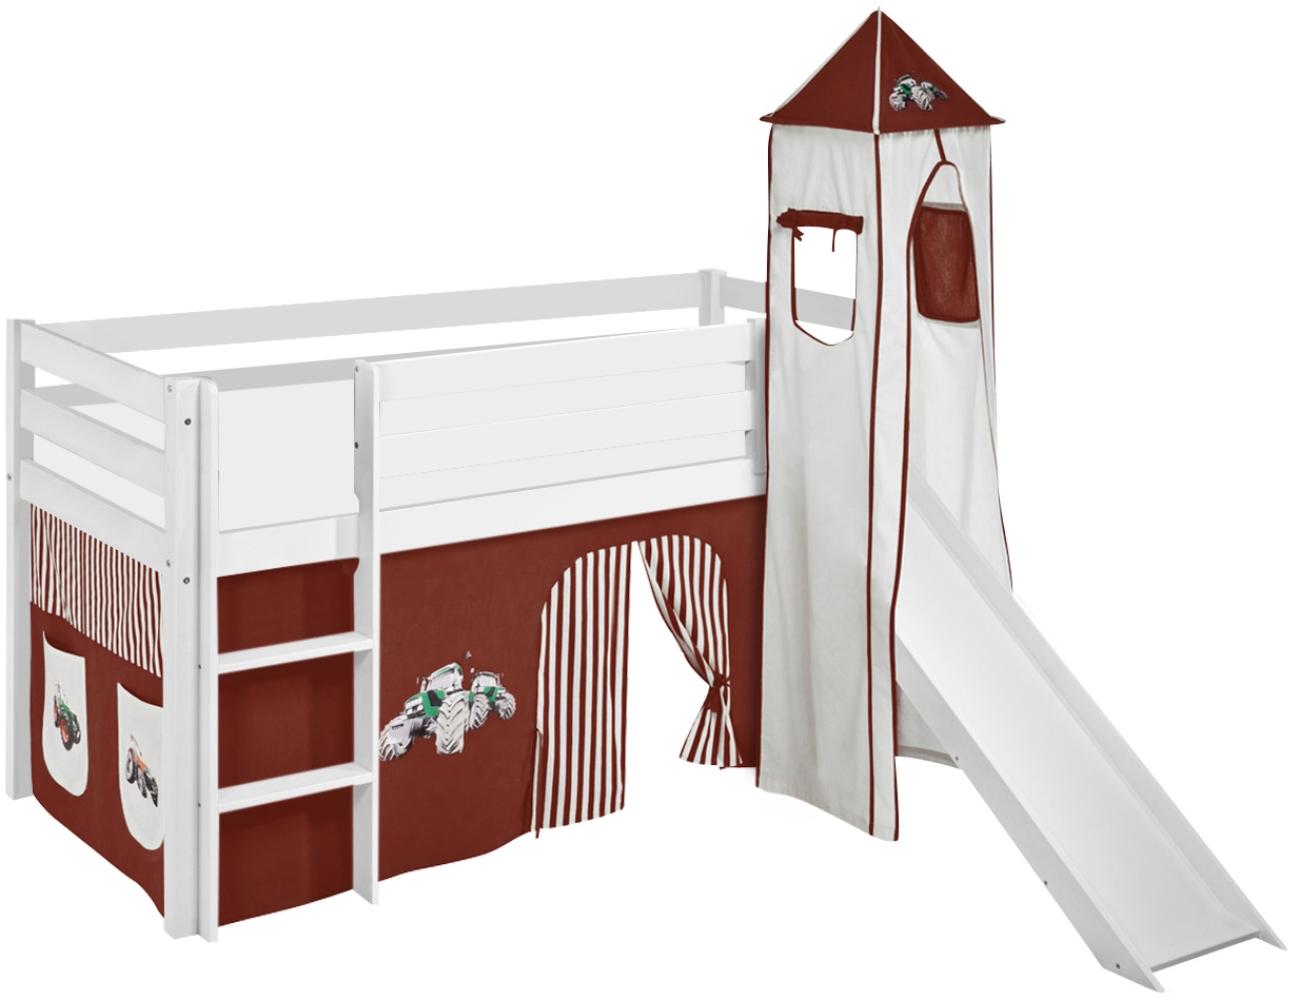 Lilokids 'Jelle' Spielbett 90 x 200 cm, Trecker Braun Beige, Kiefer massiv, mit Turm, Rutsche und Vorhang Bild 1